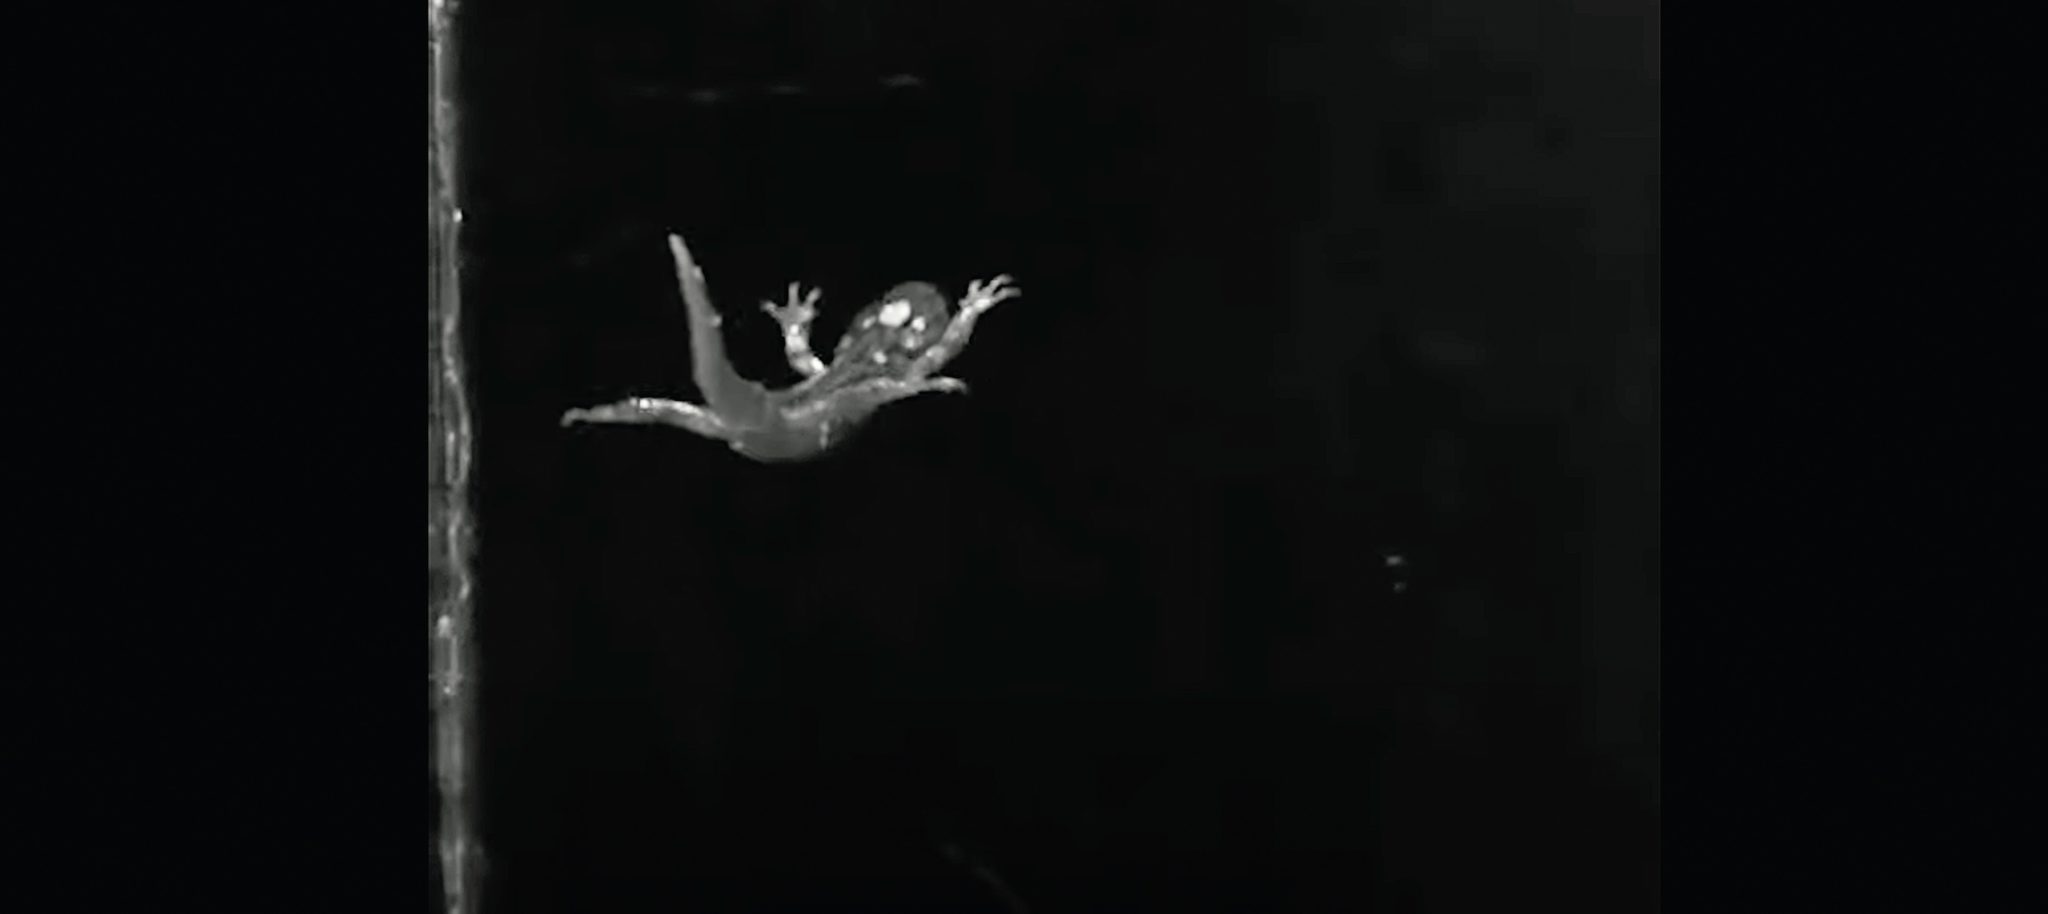 Salamander skydiving